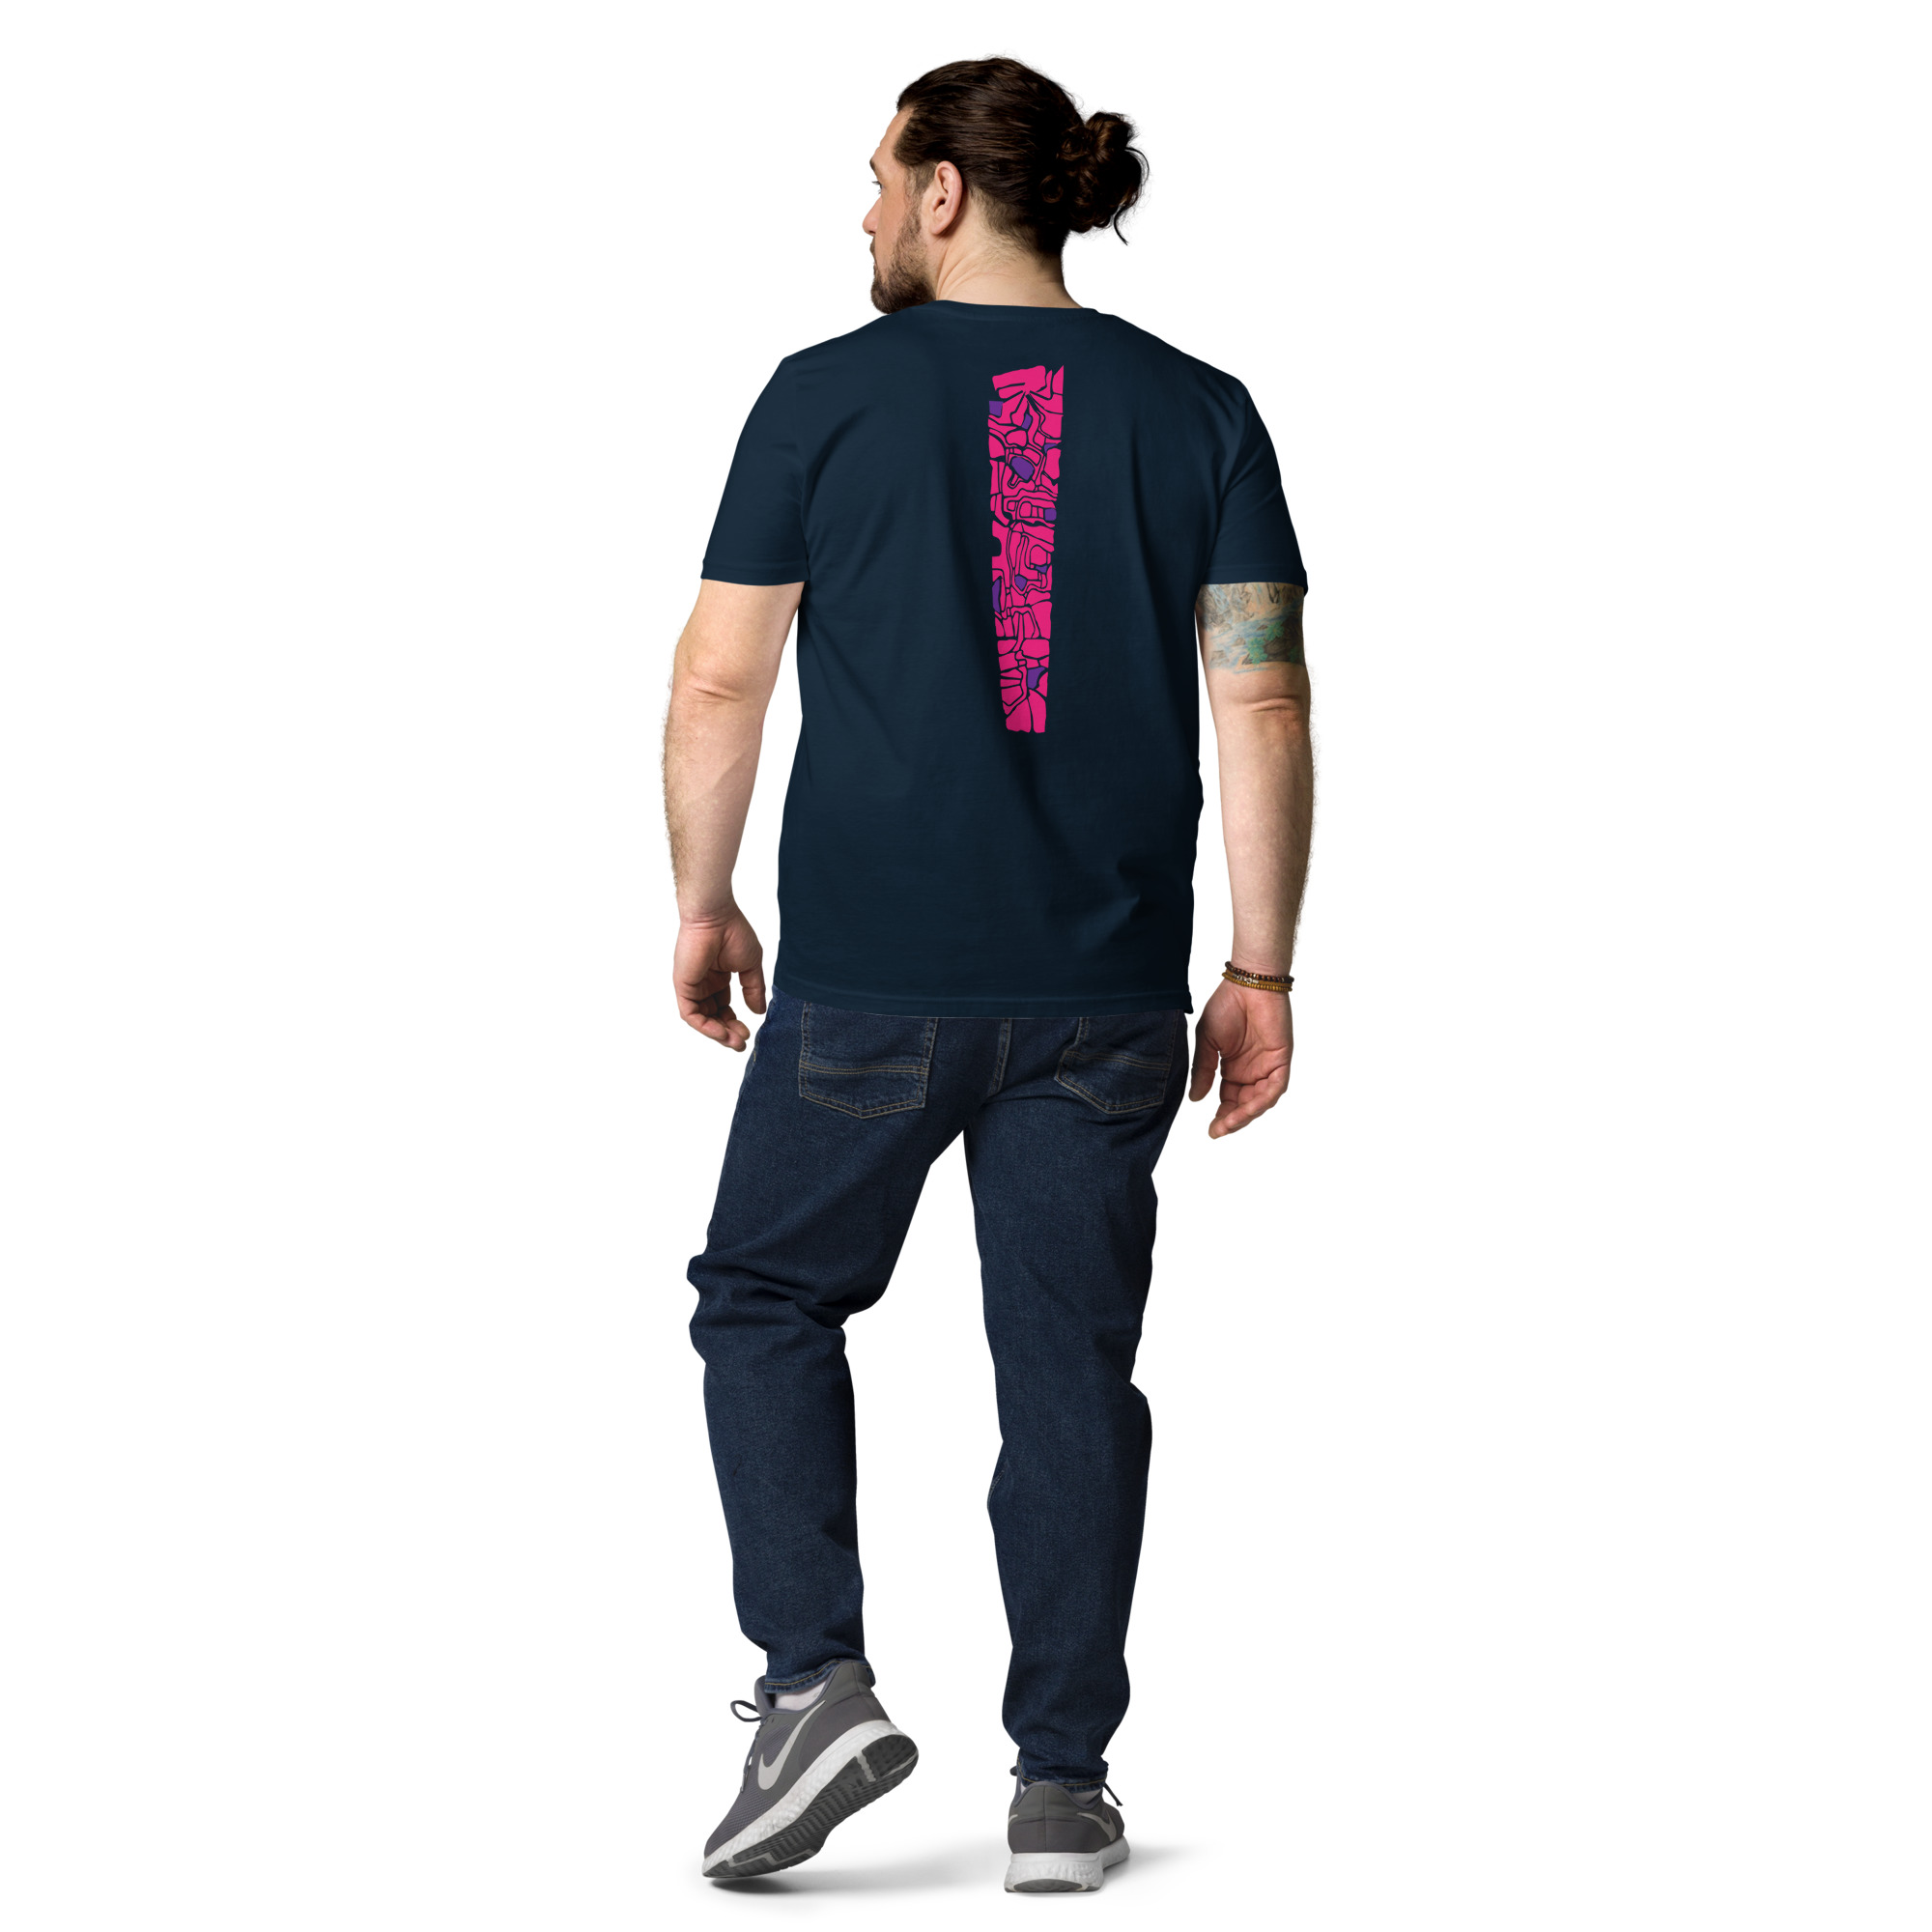 unisex-organic-cotton-t-shirt-french-navy-back-637b8a4a33952.jpg